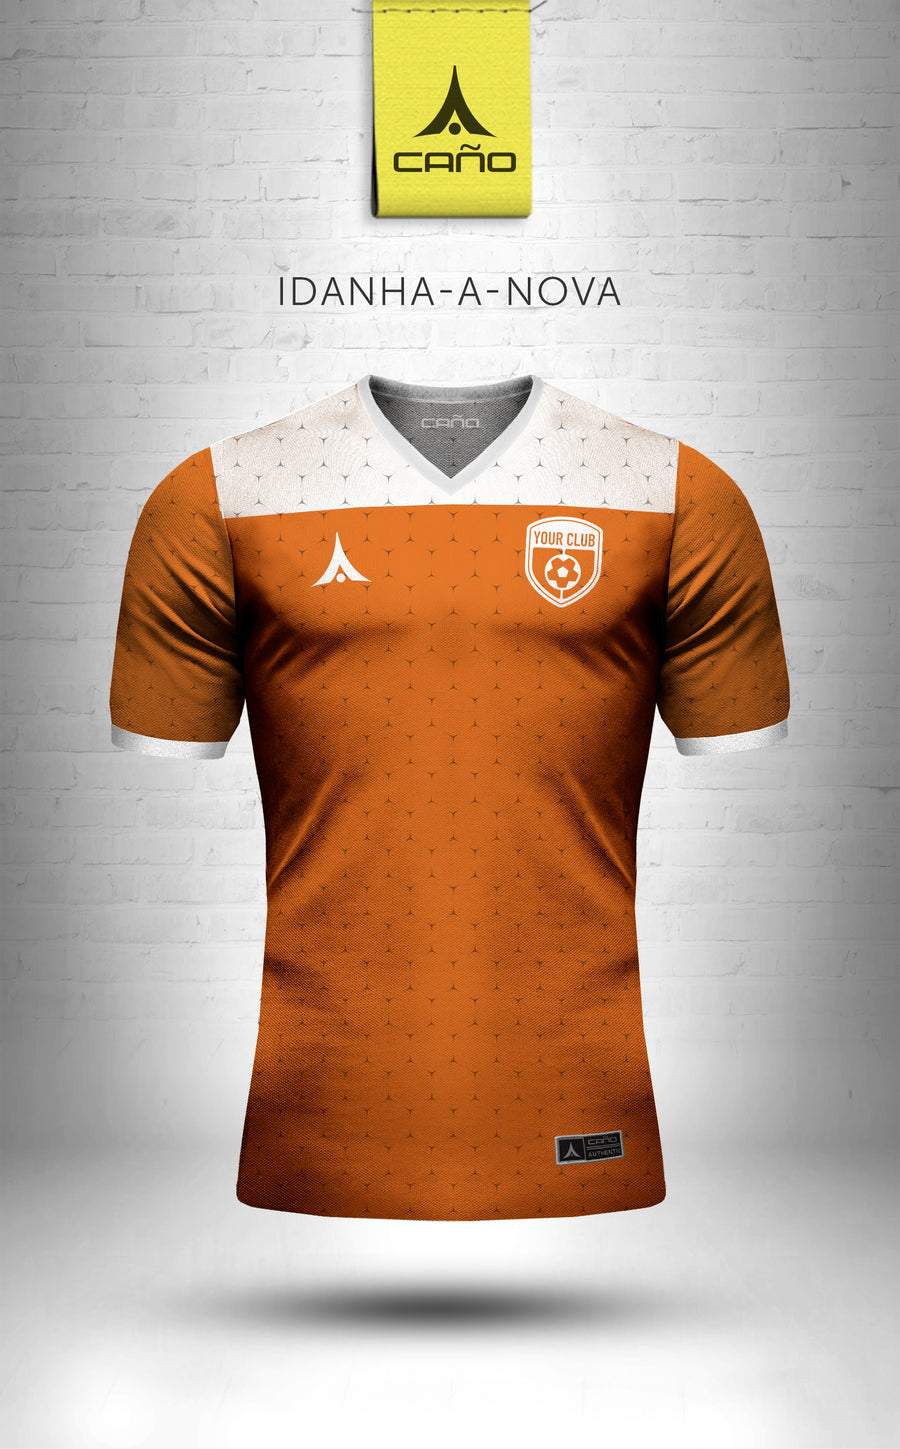 Idanha-a-Nova in orange/white